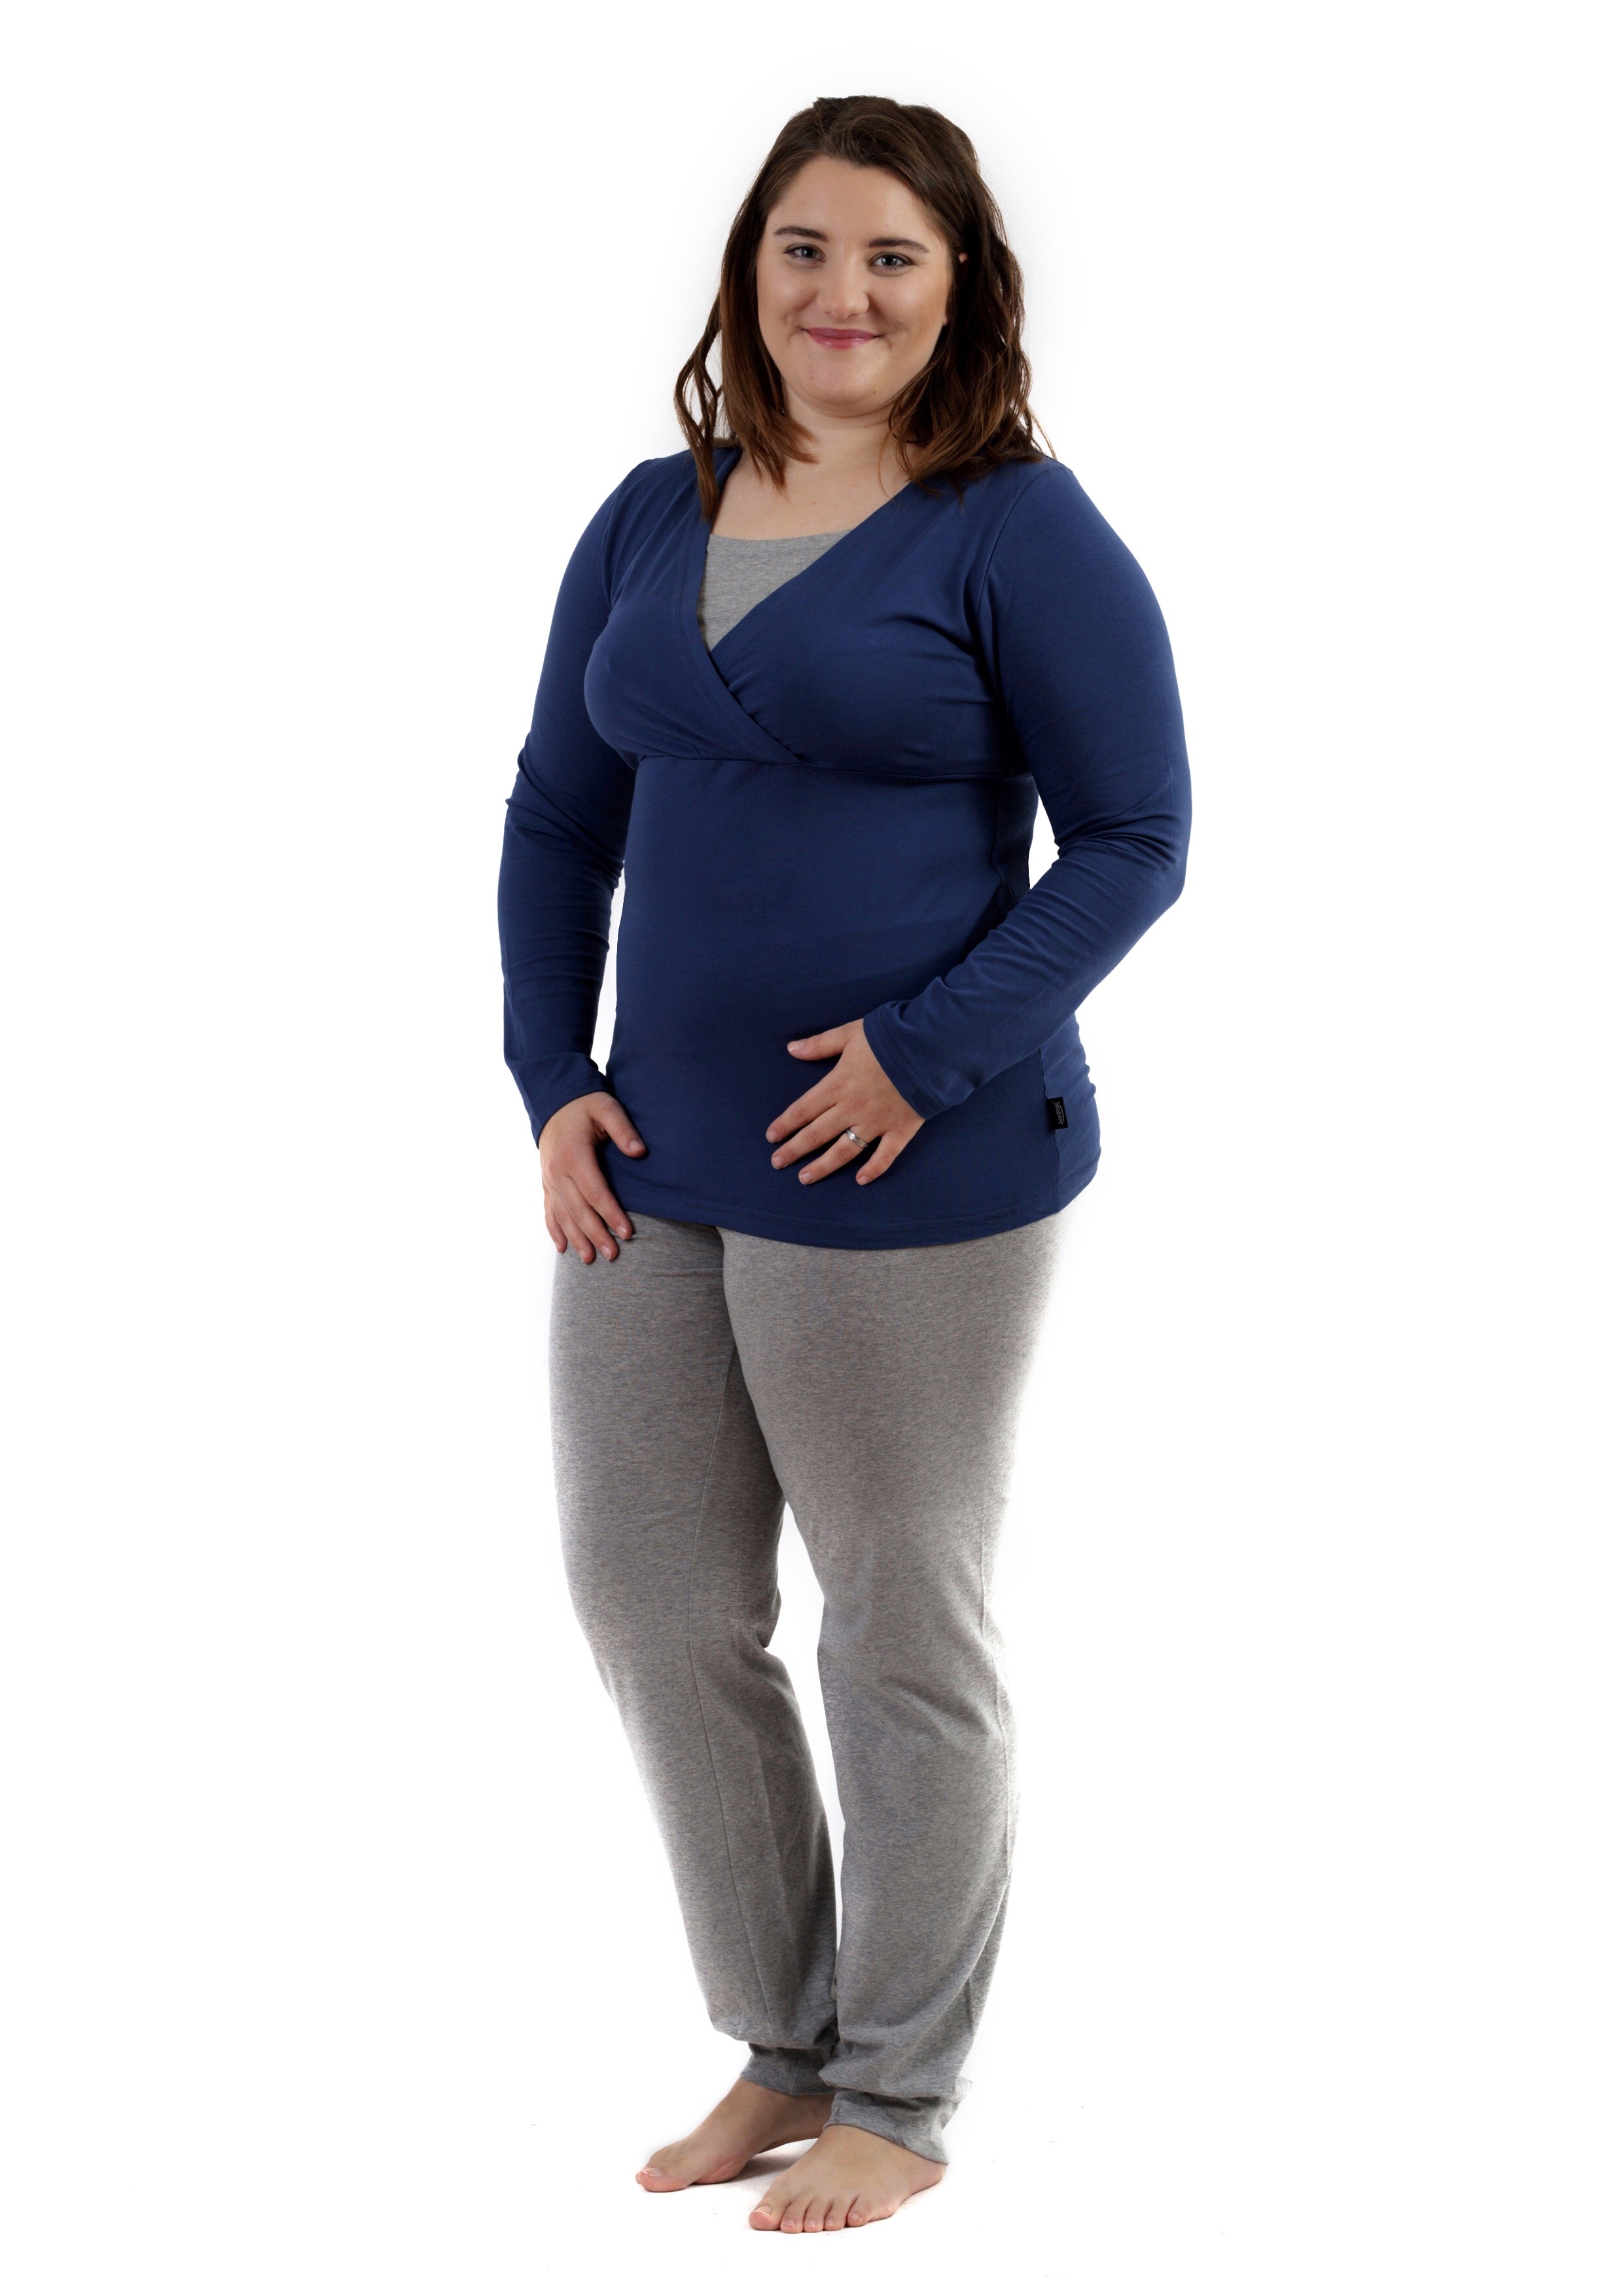 Tehotenské a dojčiace pyžamo, dlhé, jeans modré + sivý melír